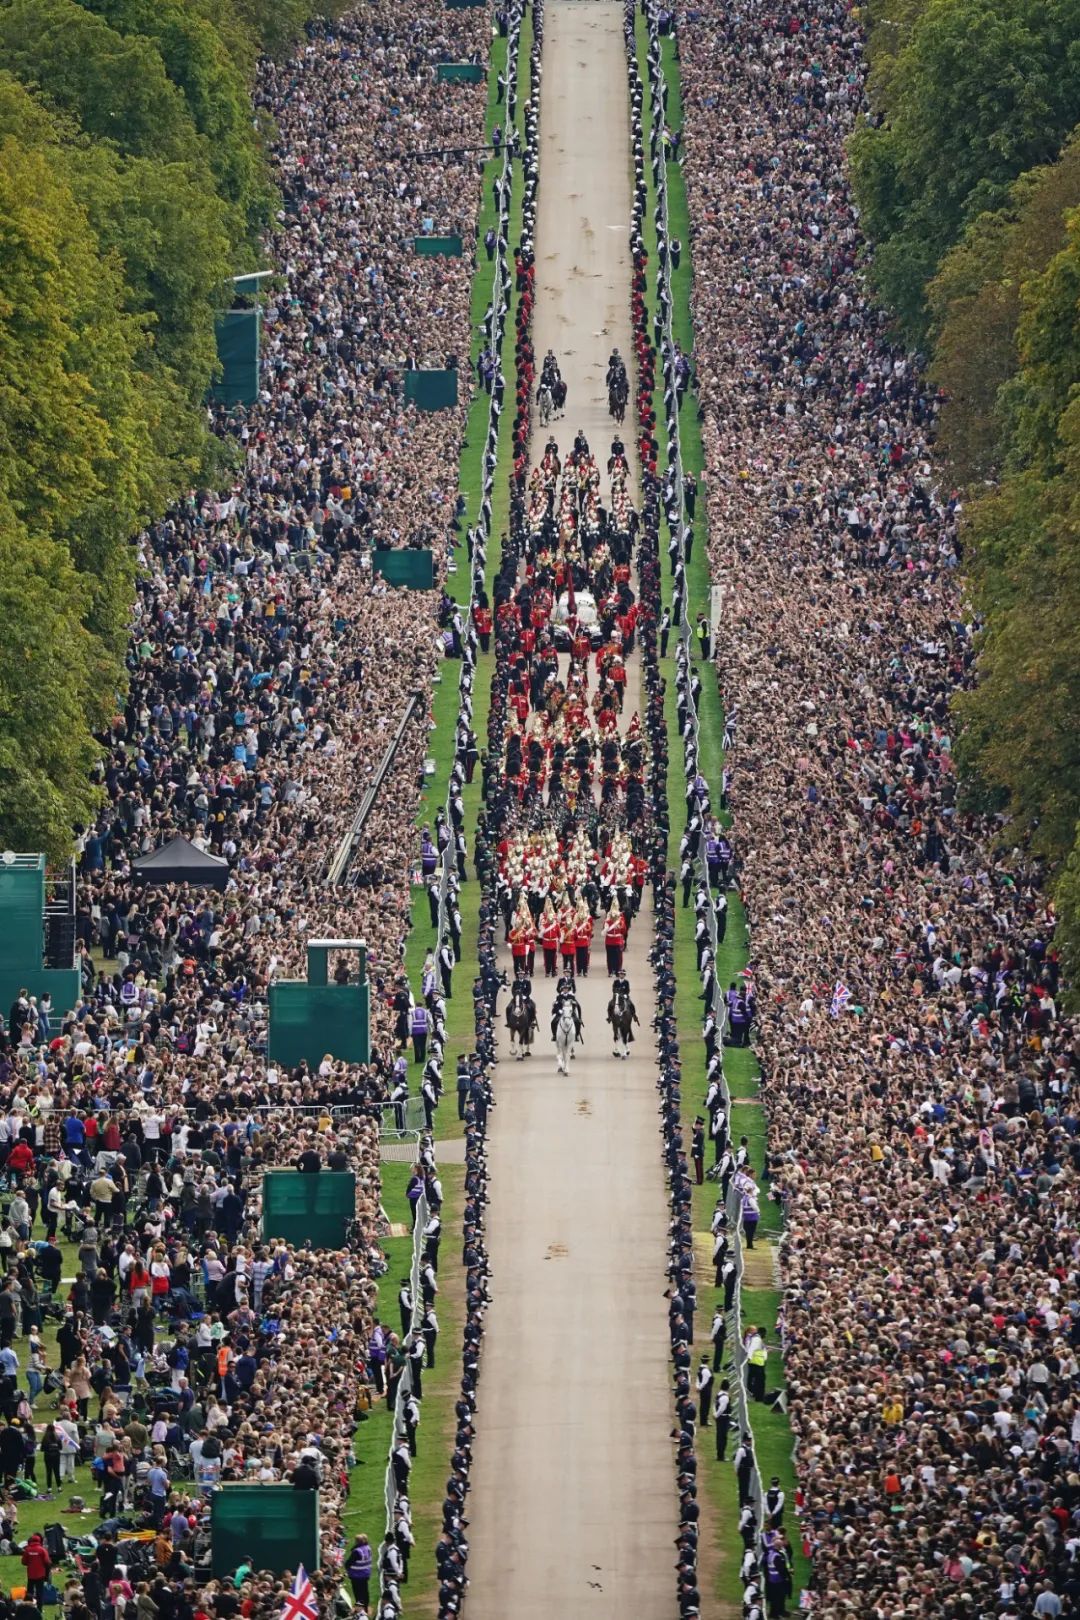 世纪告别! 女王葬礼落幕 全球41亿人说再见 加拿大举国哀悼 特鲁多出席却遭骂翻 新闻 第1张